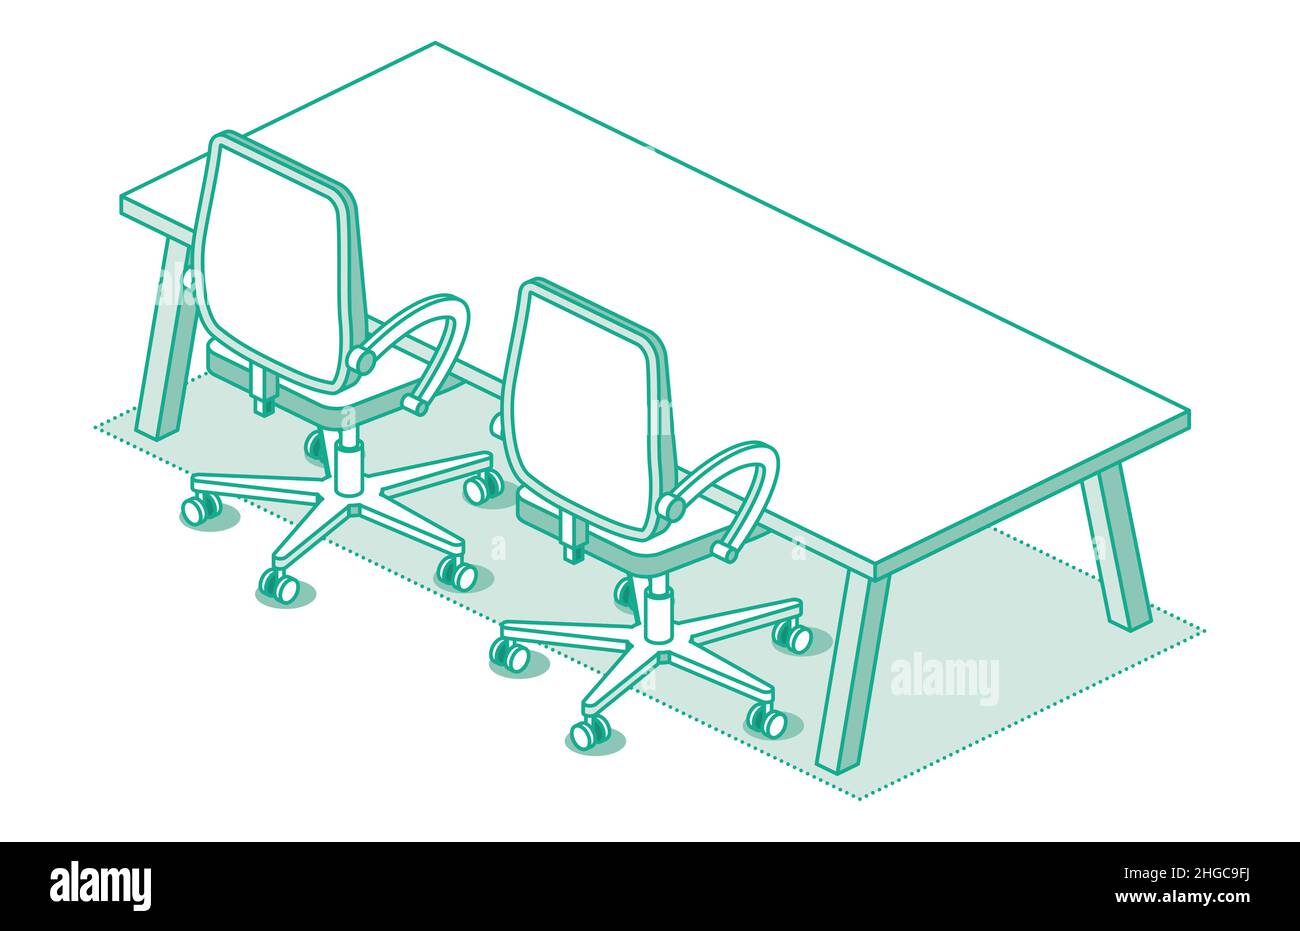 Zwei isometrische Bürostühle auf Rädern und ein moderner Tisch mit vier Beinen. Vektorgrafik. Symbol „Umriss Schreibtischstuhl“. Möbel für den Innenbereich. Stock Vektor